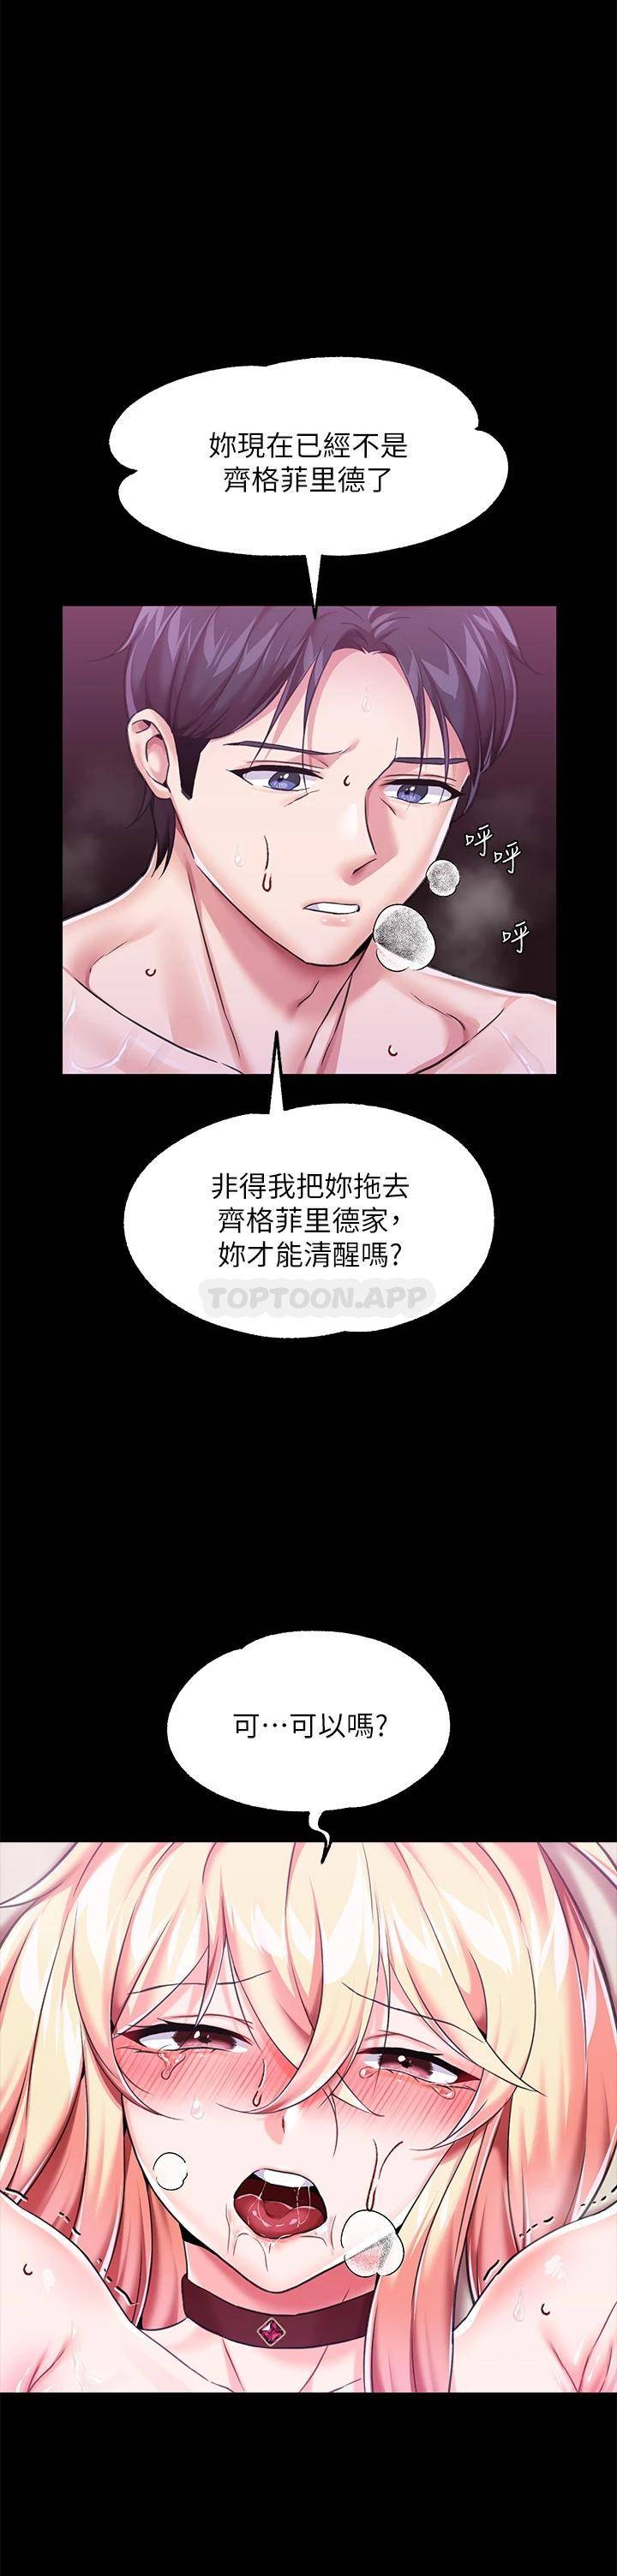 韩国污漫画 調教宮廷惡女 第4话在奴隶身上标示领地 34